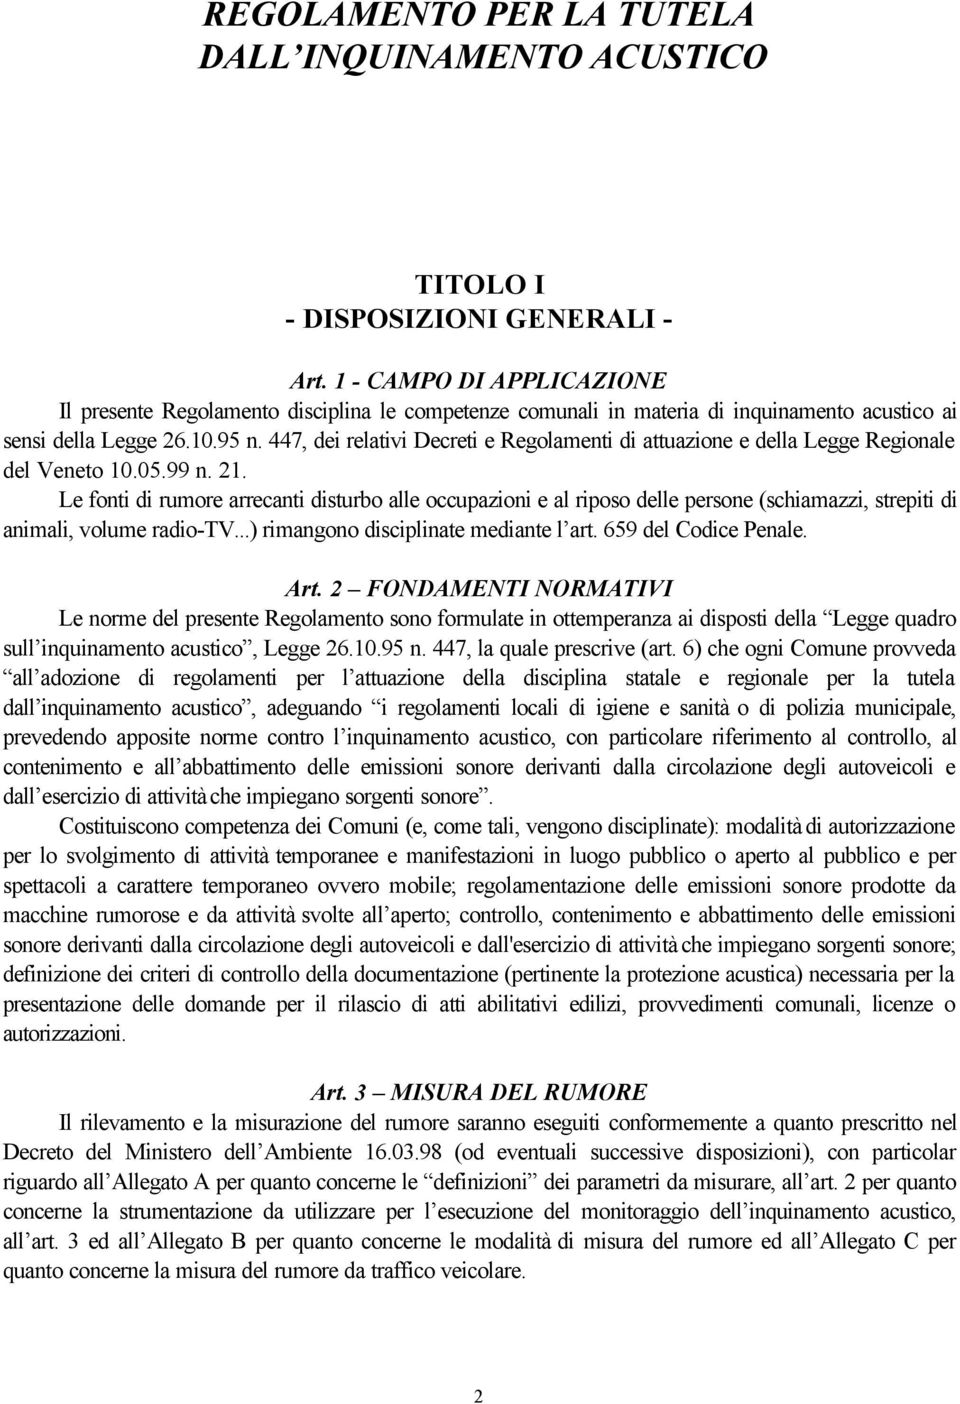 447, dei relativi Decreti e Regolamenti di attuazione e della Legge Regionale del Veneto 10.05.99 n. 21.